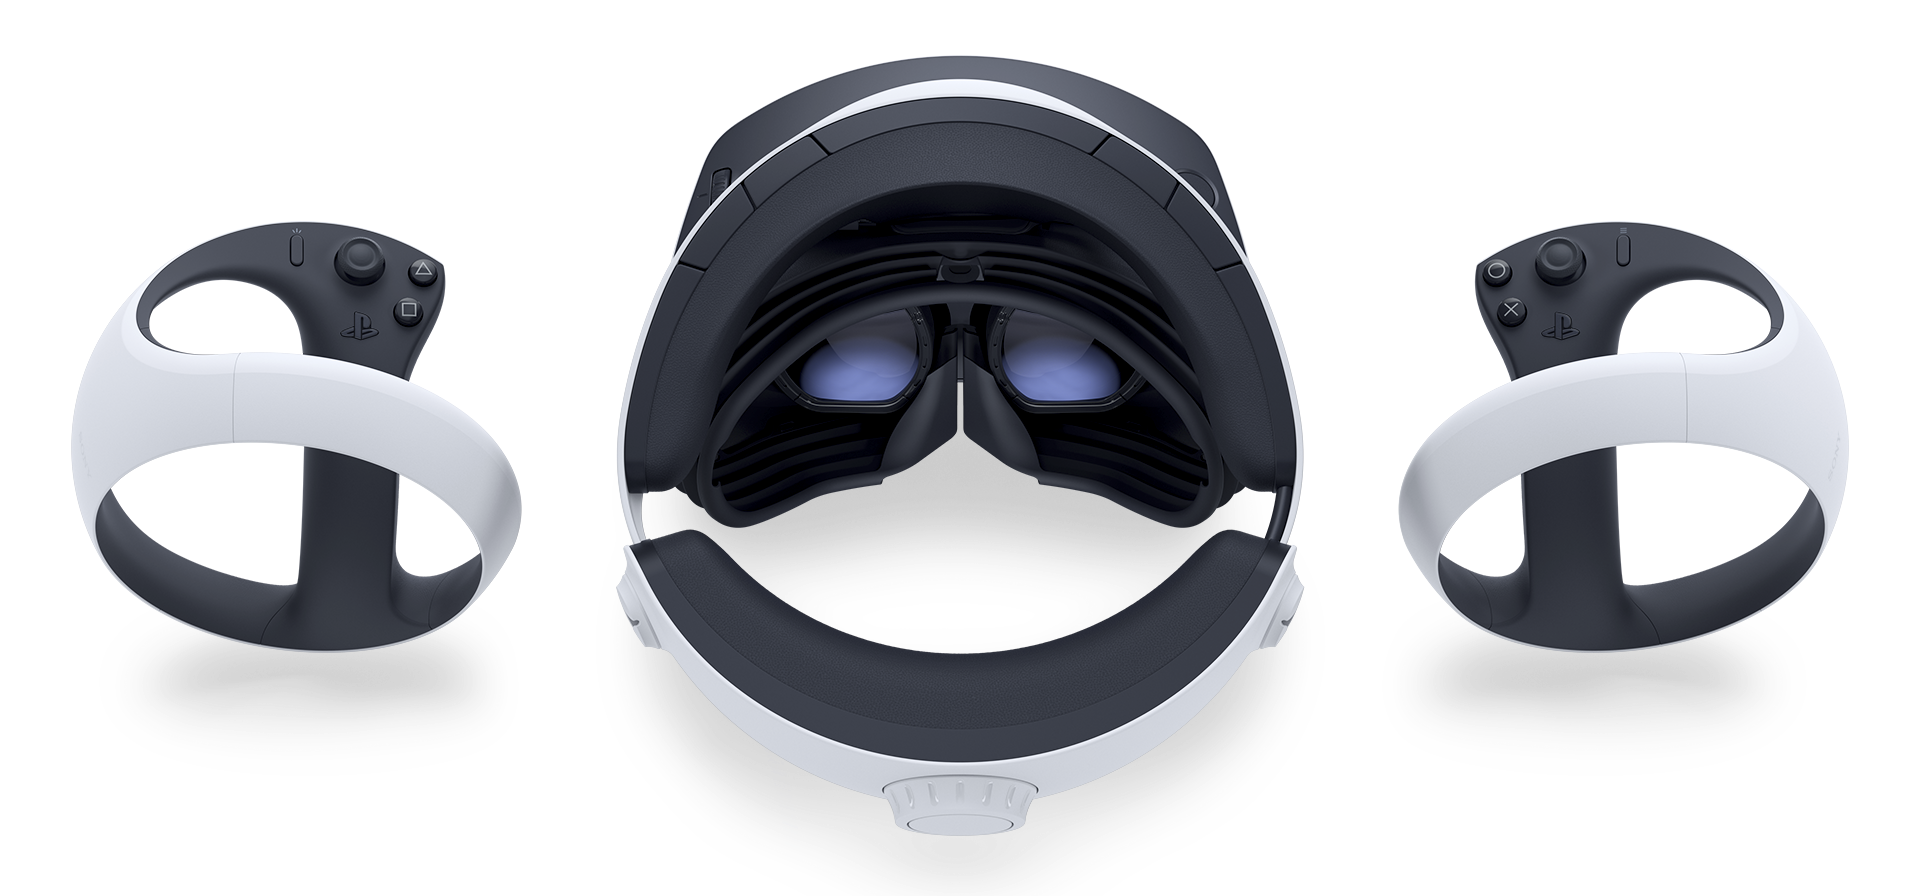 et kig indefra i PS VR2-headsettet